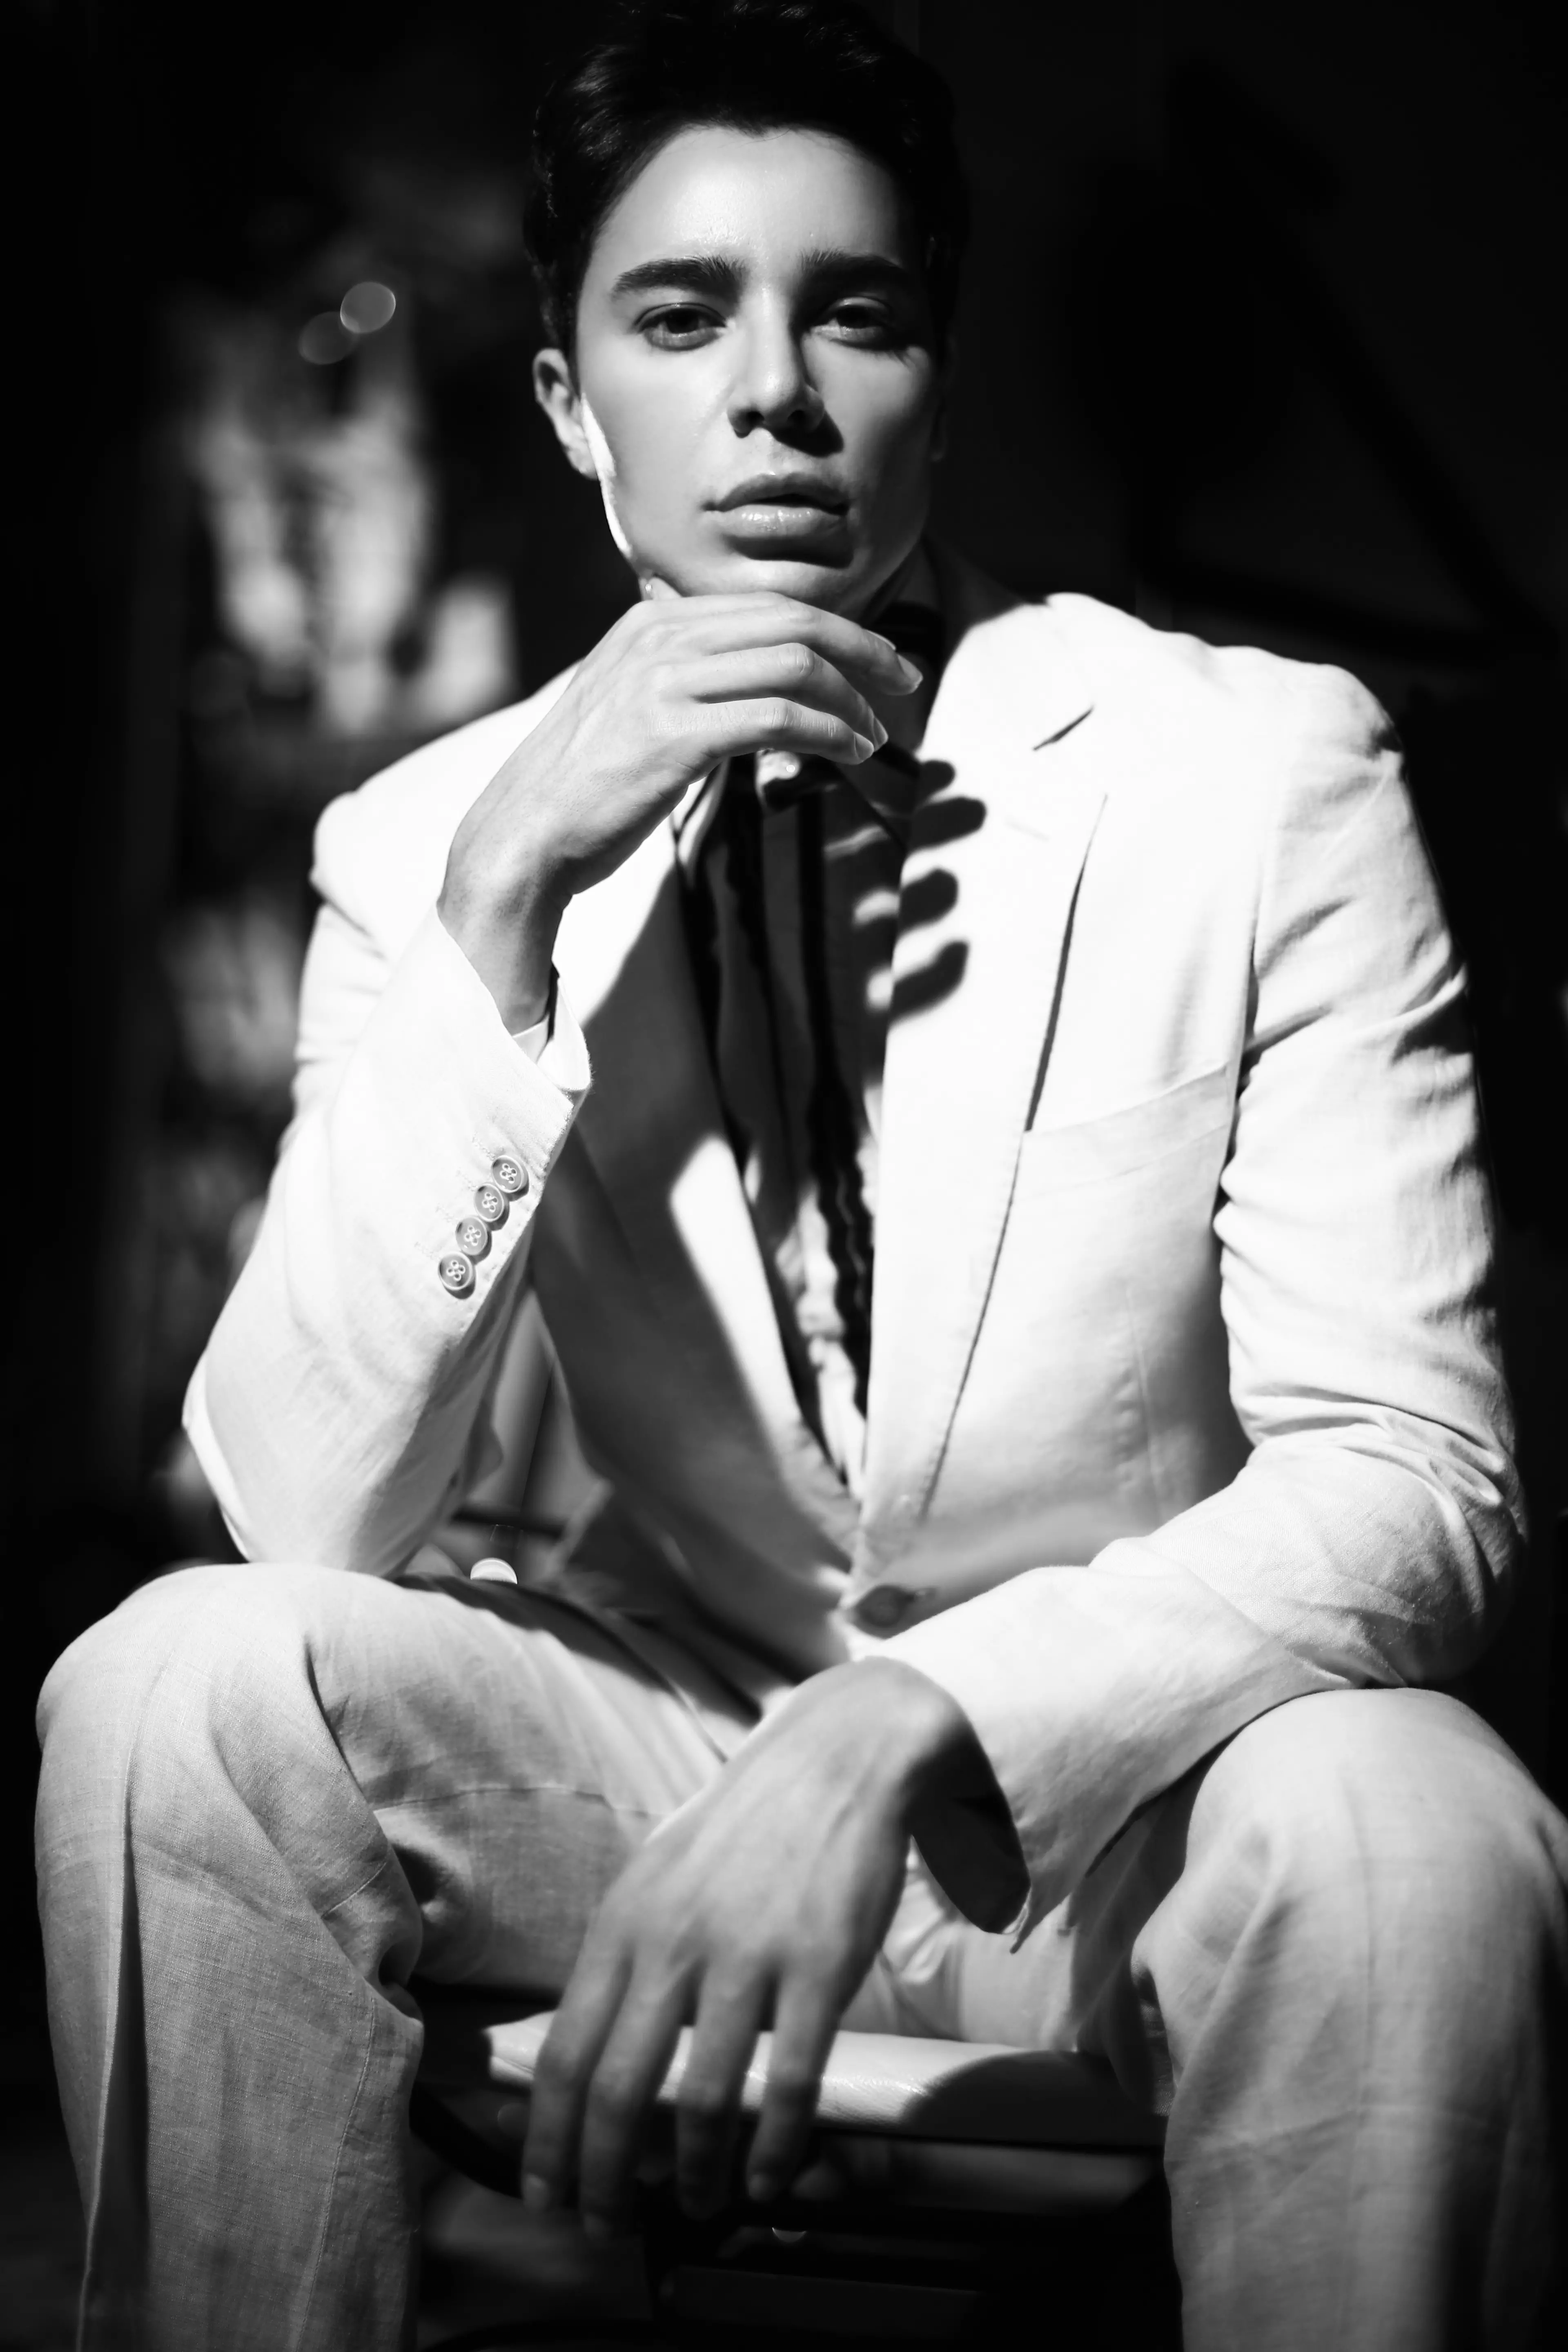 Ekskluzivni modni uvodnik z moškim modelom Iccarom Pereiro, ki ga je upodobil Nicky Guanawan za spletno uredniško revijo Lewis Magazine. Oblikovala Amelie Poerwoko.